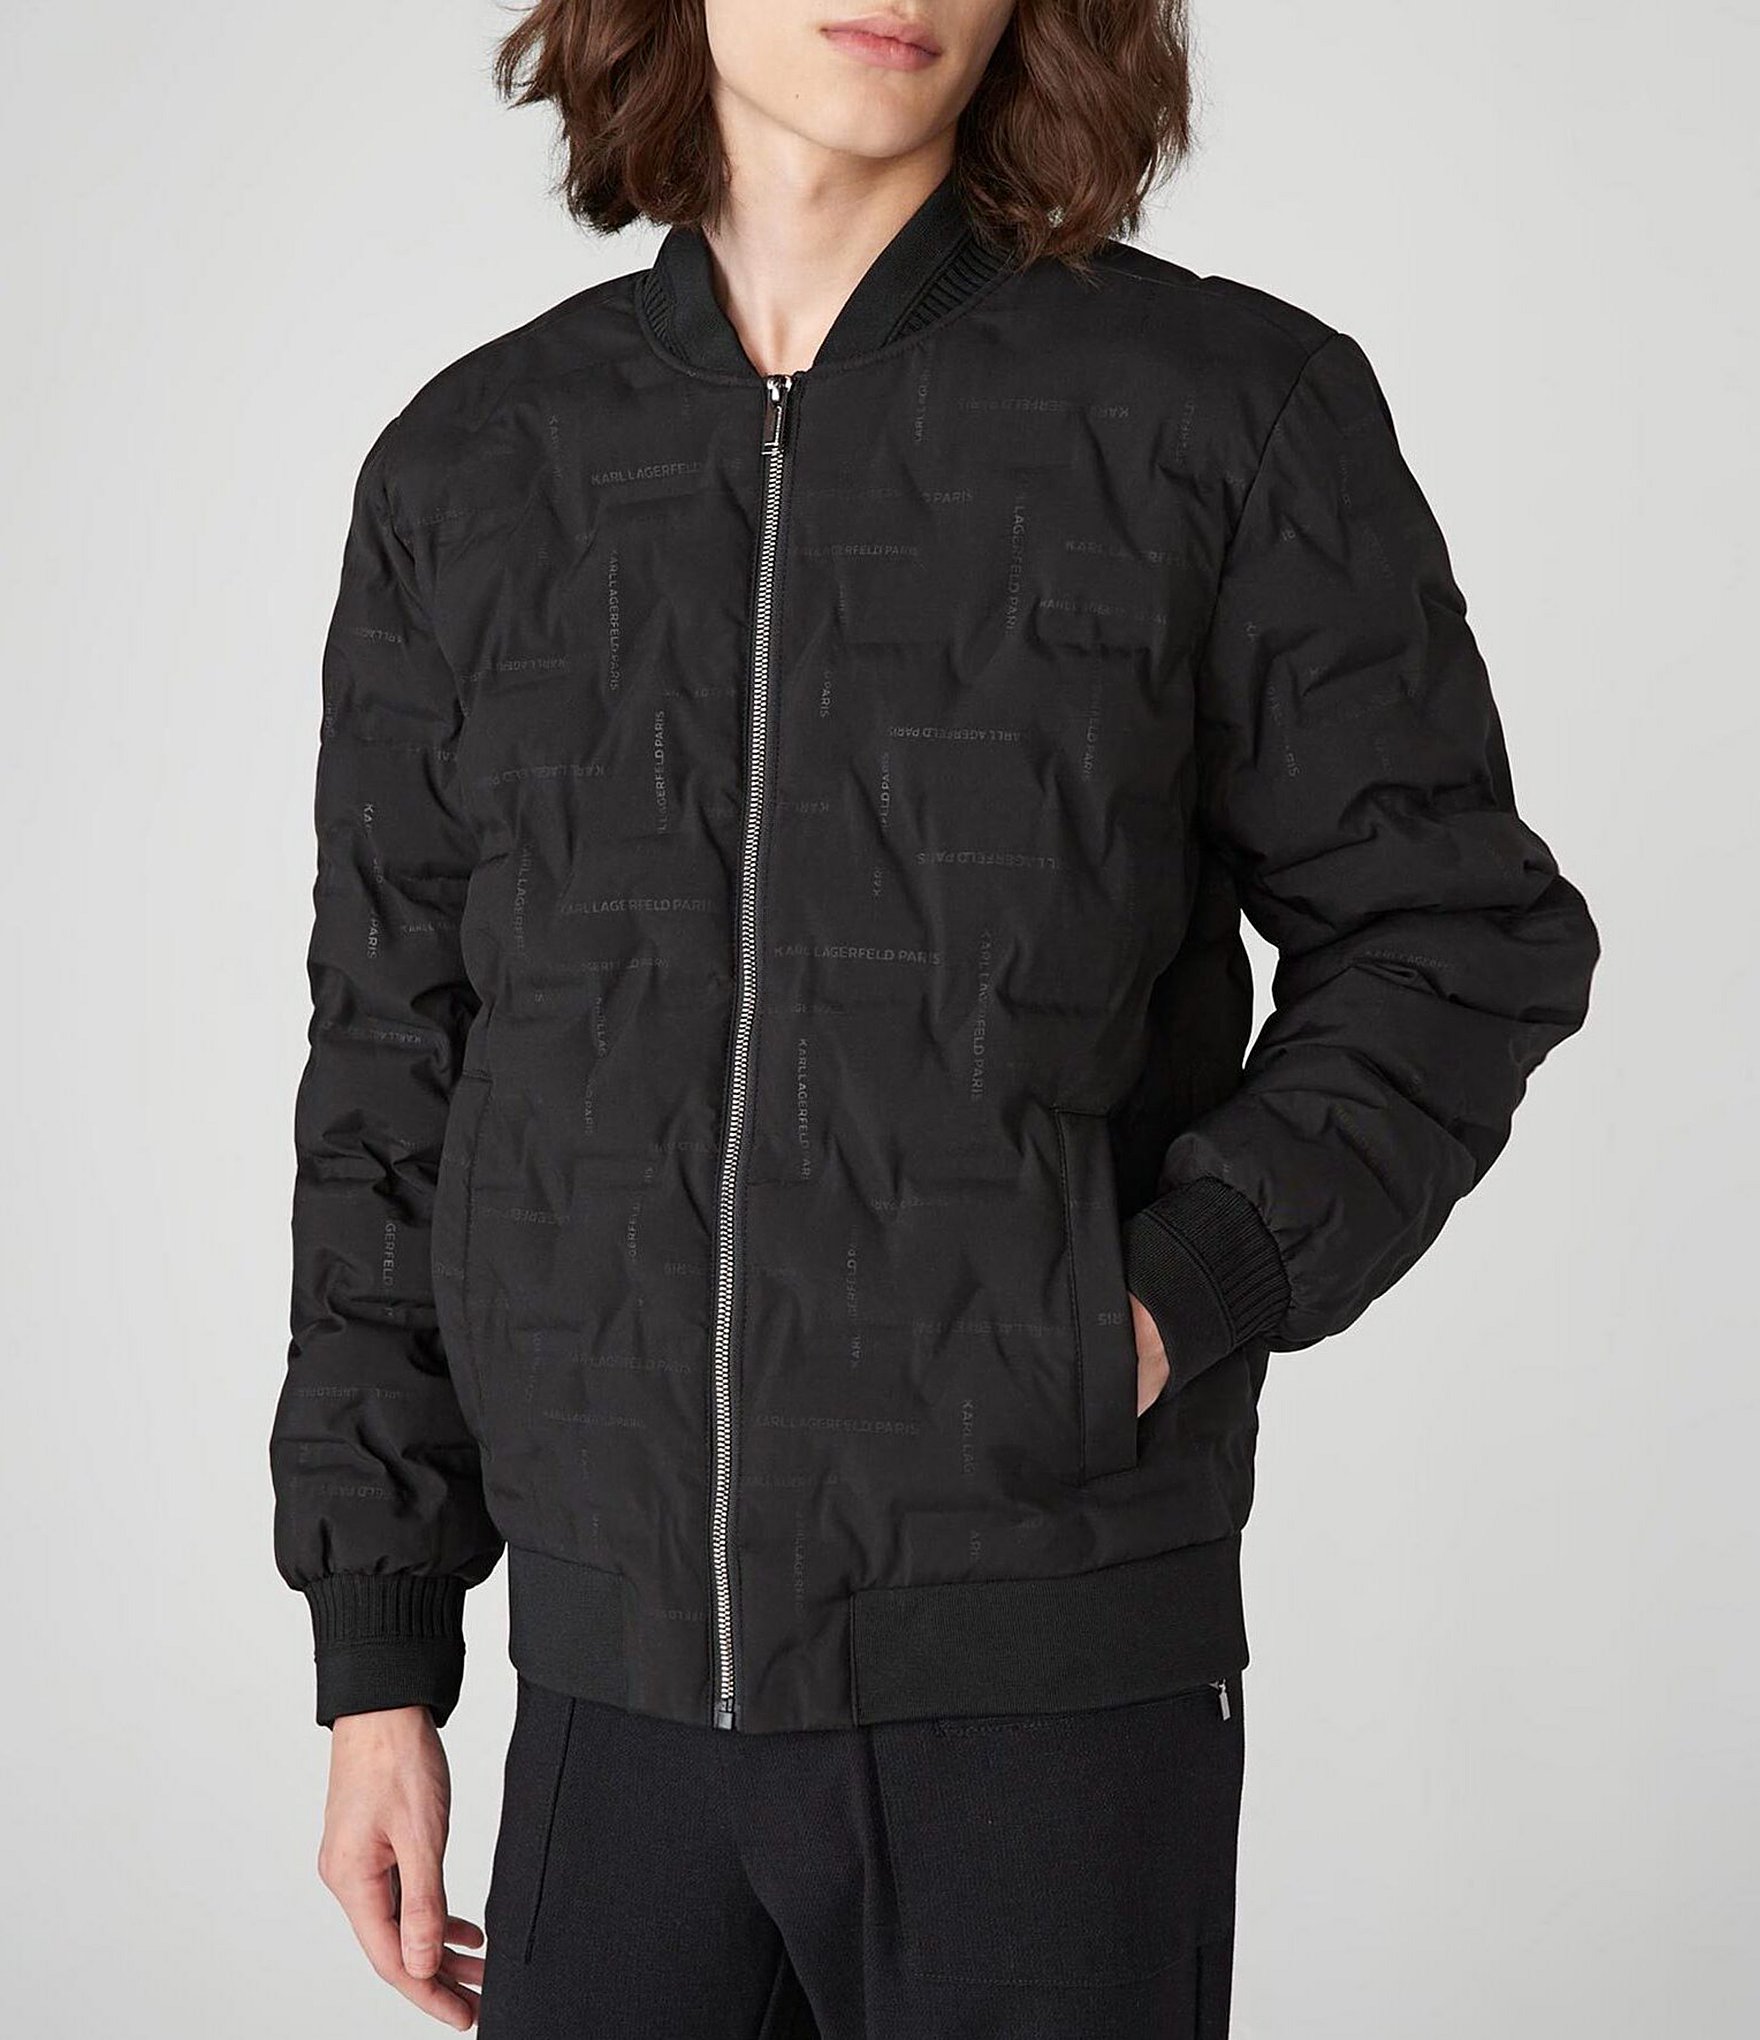 KARL LAGERFELD Paris Mens Jacket Hooded Full Zip Black NWT $229 LARGE | eBay